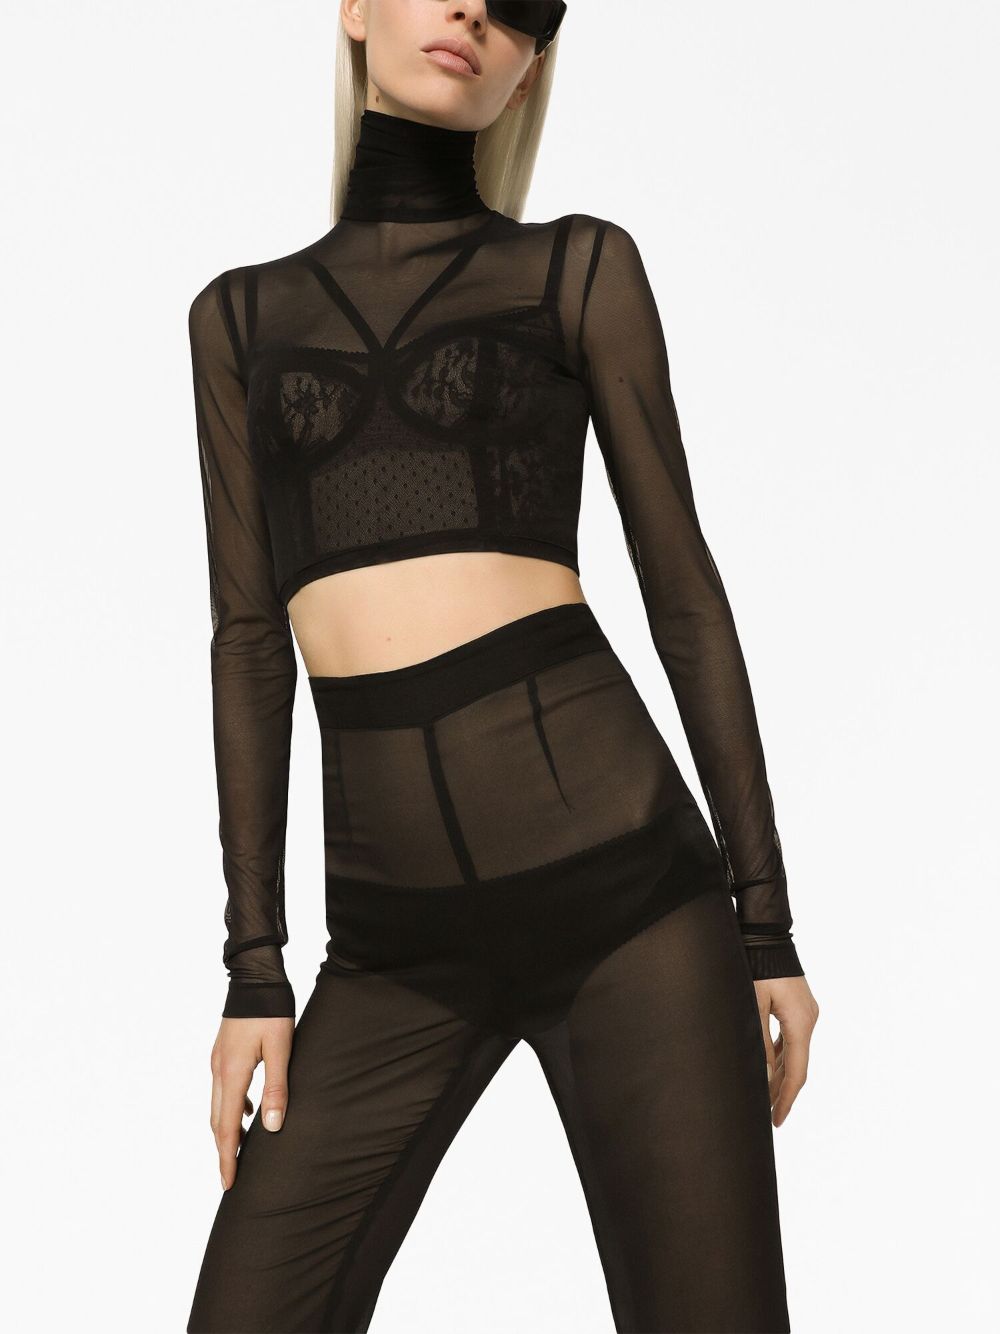 Shop Dolce & Gabbana Semi-sheer Chiffon Flared Trousers In Black